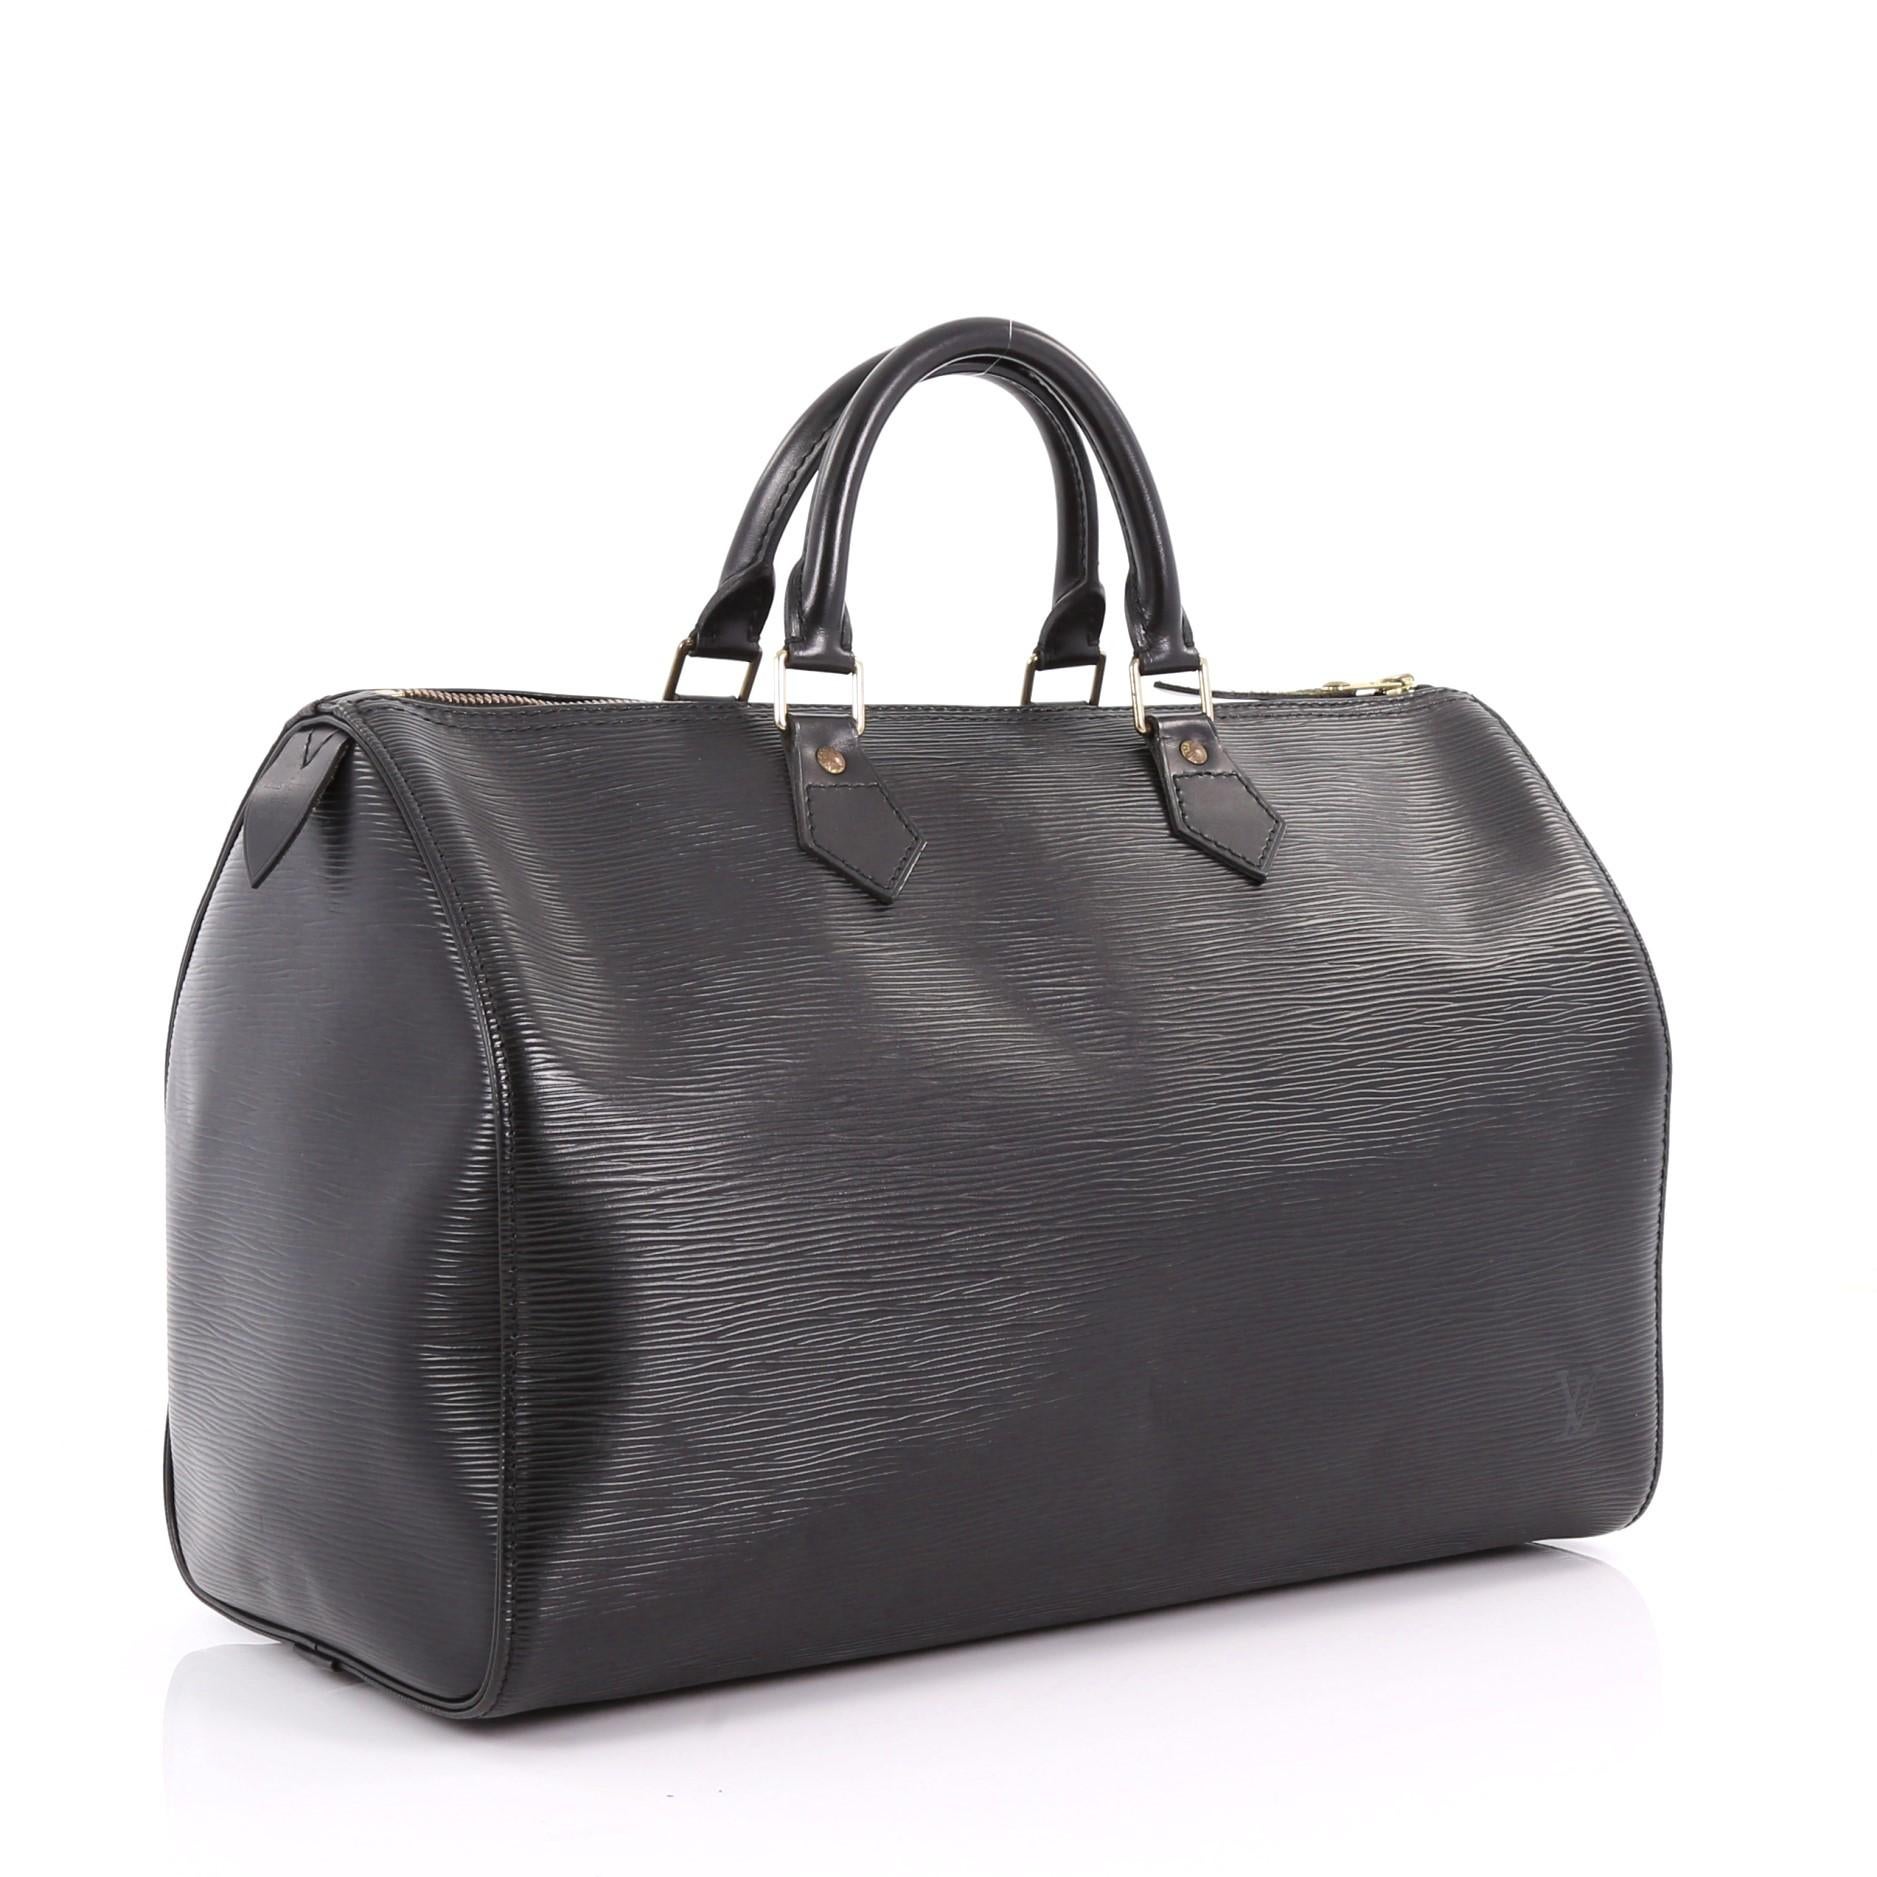 Black Louis Vuitton Speedy Handbag Epi Leather 35